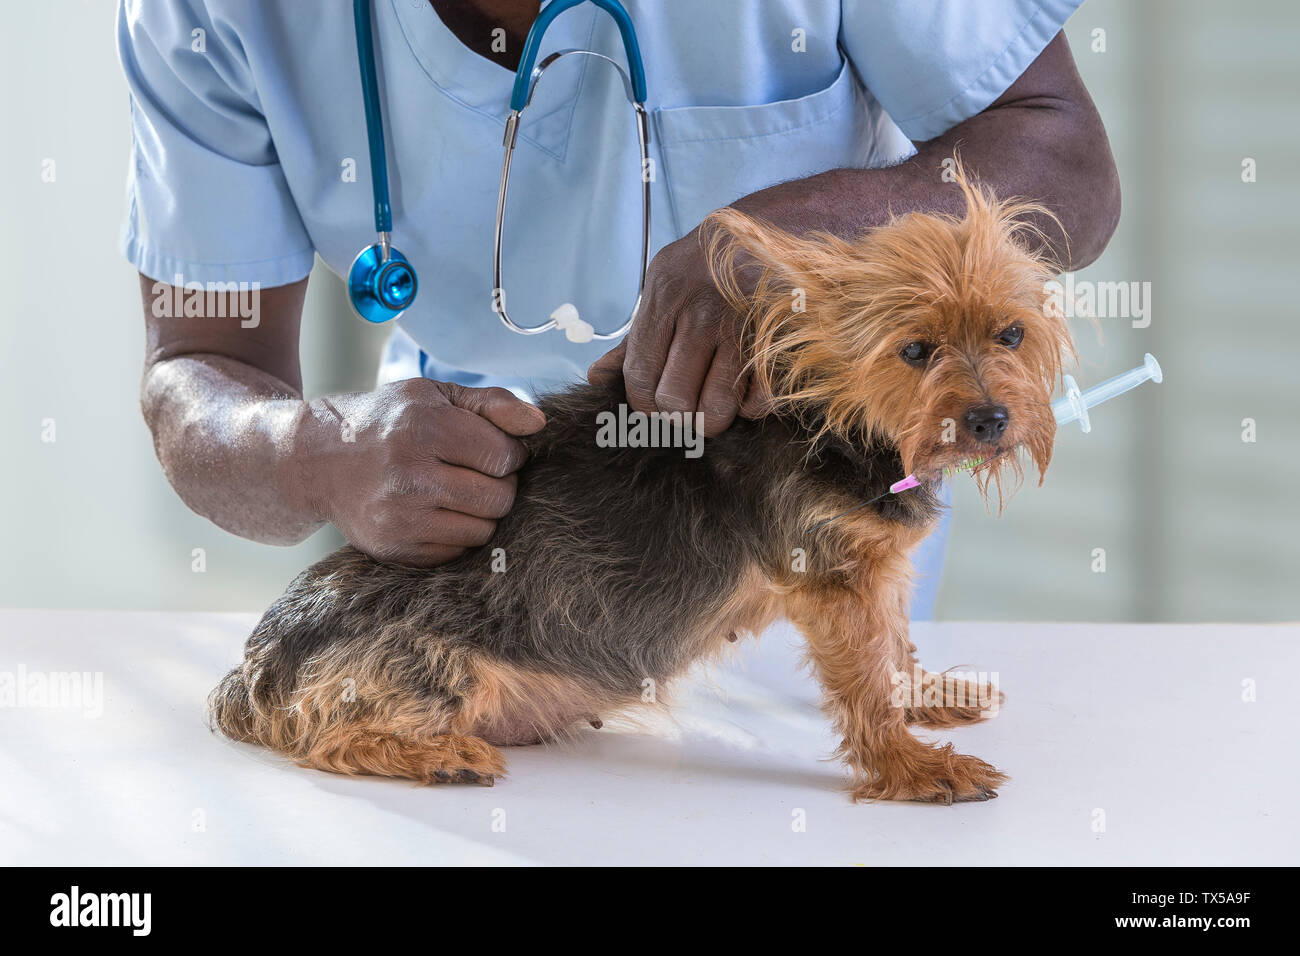 Tierarzt mit Pet's Health auf yorshire Holding eine syringue in seinem Mund überprüft, auf tierärztliche Klinik Hintergrund. Stockfoto